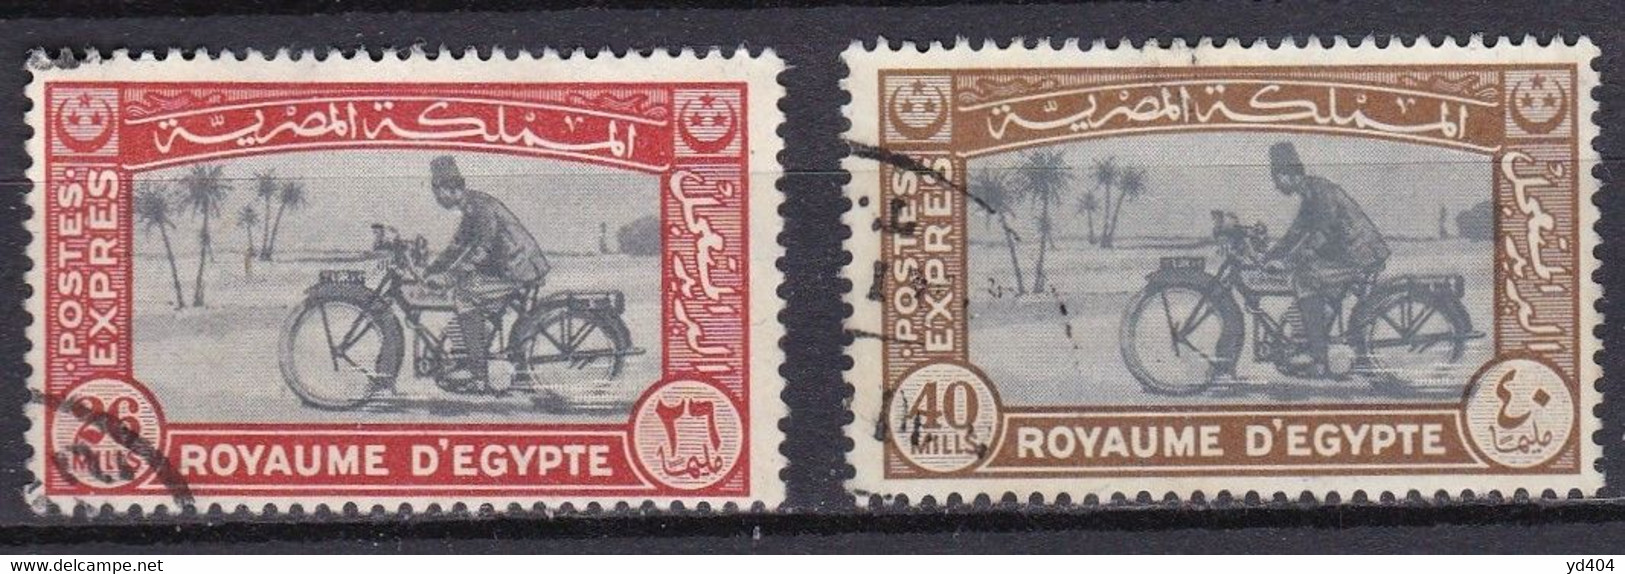 EG904 – EGYPTE – EGYPT – EXPRESS – 1943-44 – MOTORCYCLE POSTMAN – Y&T # 3/4 USED 12 € - 1866-1914 Khedivaat Egypte